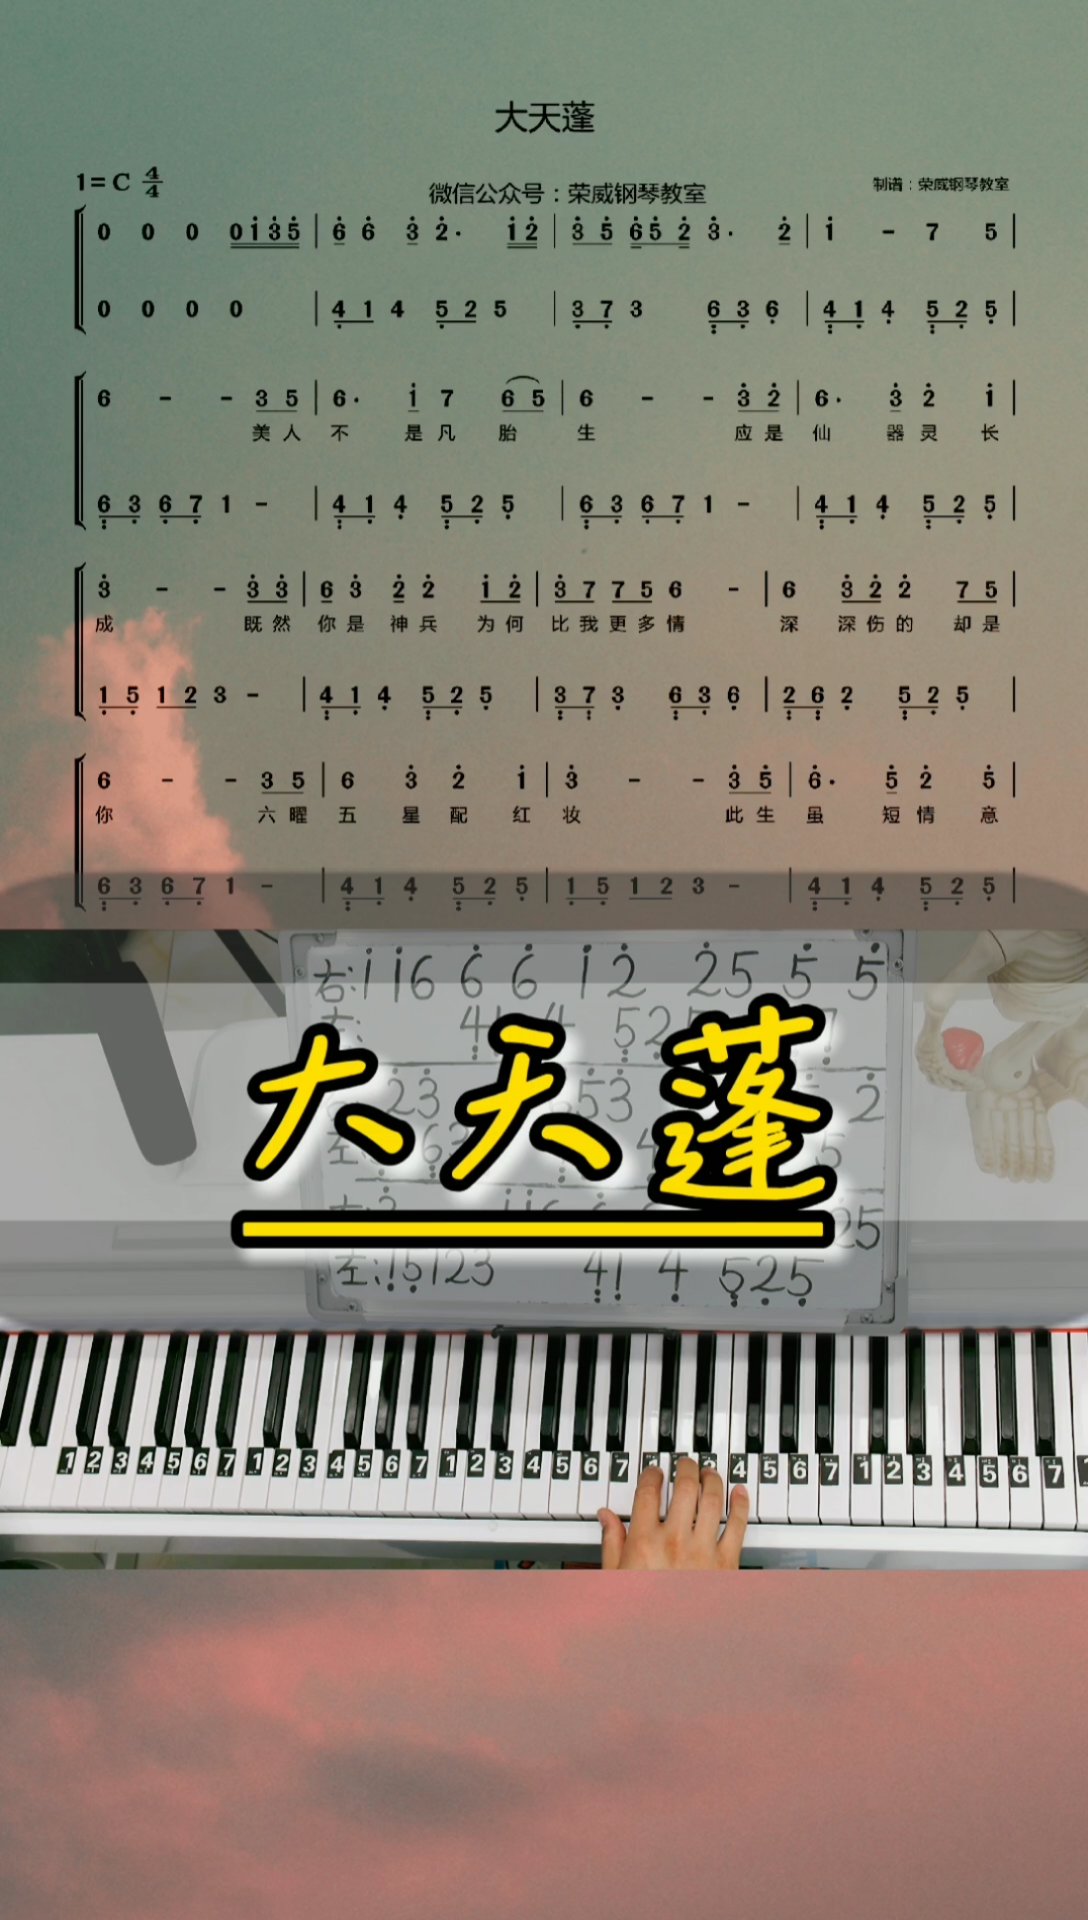 大天蓬简谱 钢琴图片